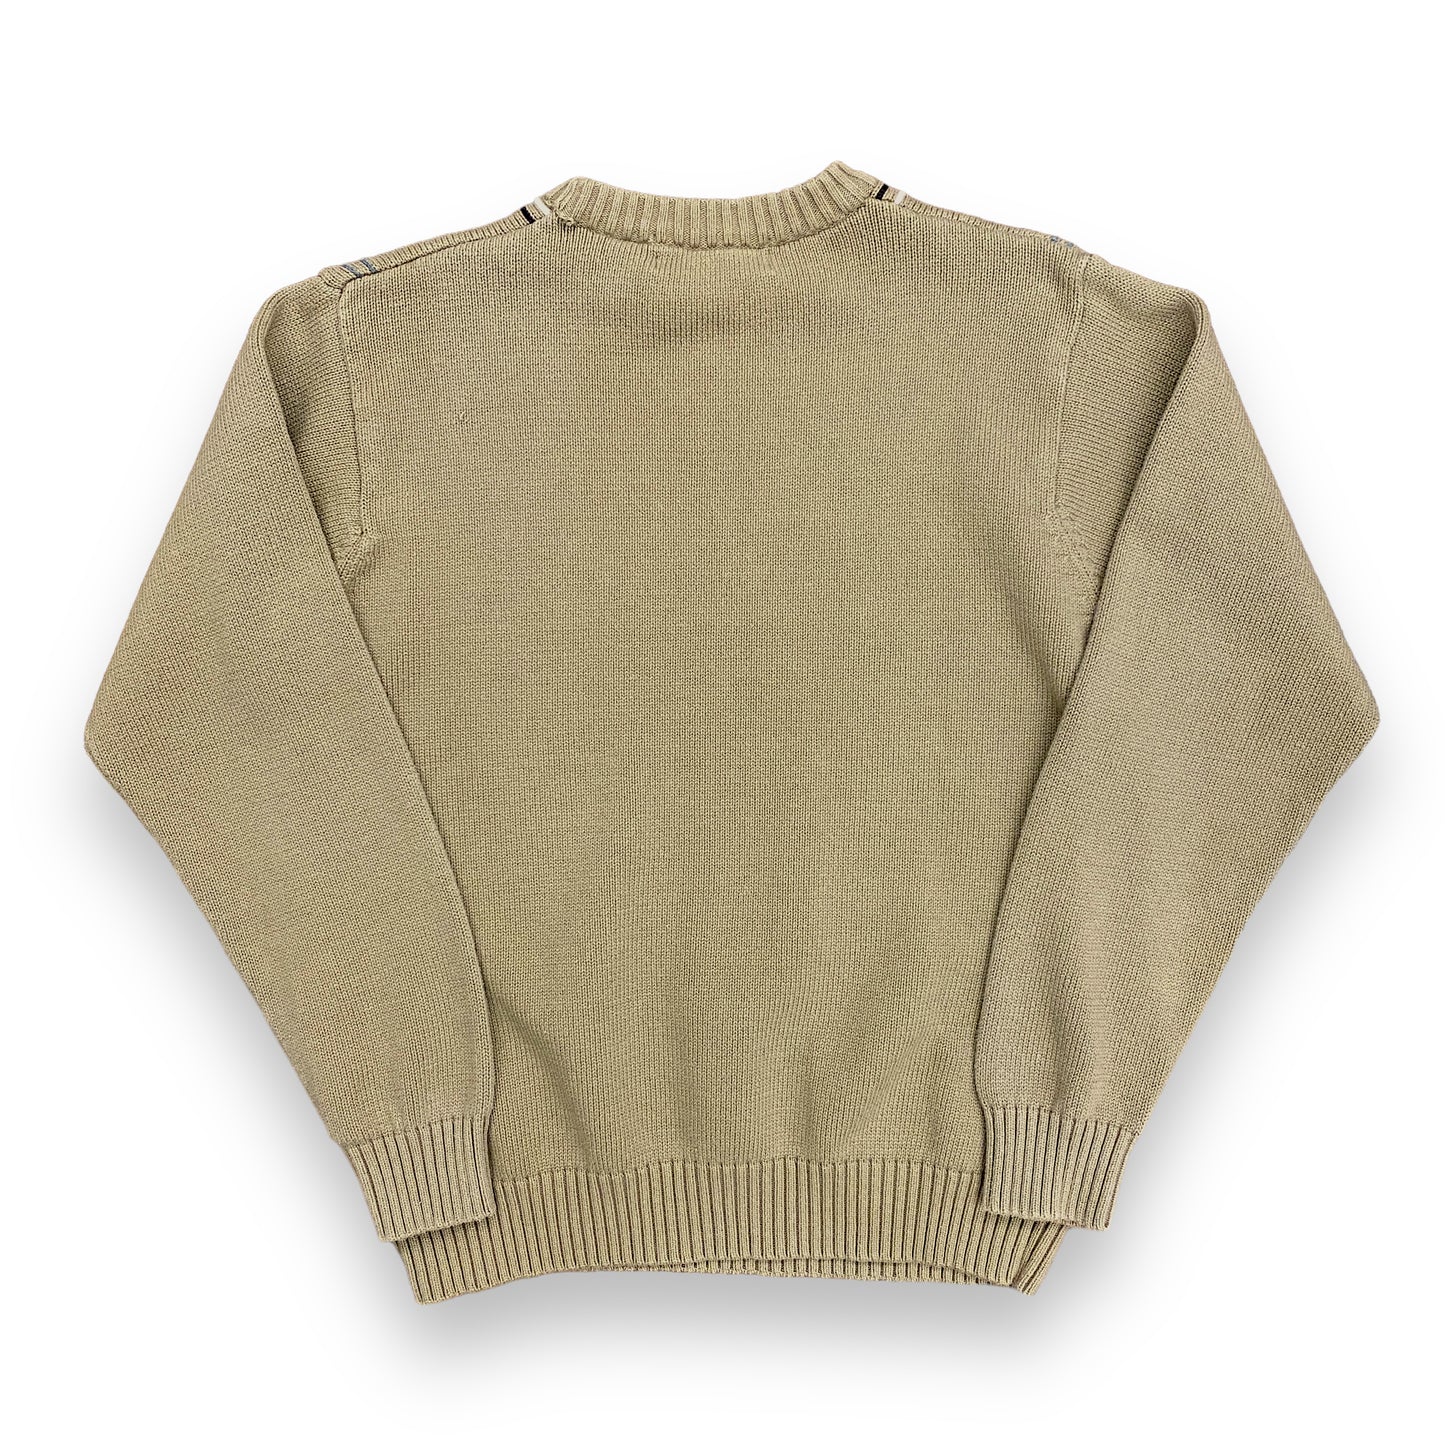 Oscar De La Renta Tan Window Pane Sweater - Size Large